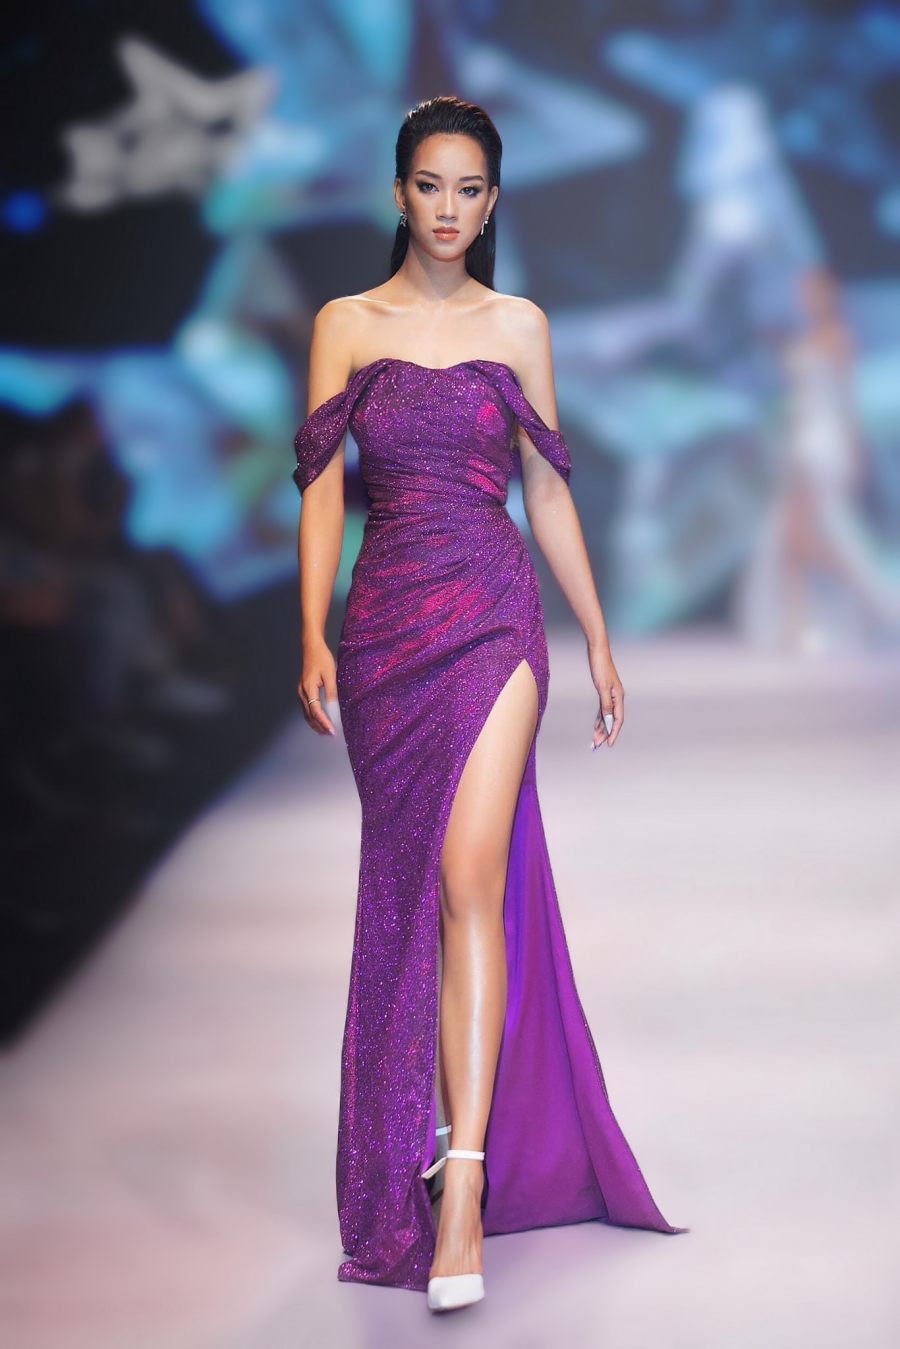 Nguyễn Thị Vân Anh sinh năm 2000 cũng đã nộp đơn tham dự Miss Grand Vietnam 2022. Cô từng đạt thành tích top 10 Miss Eco 2021, bên cạnh đó cô cũng giật giải Người đẹp Áo dài tại Miss Photogenic. Được biết, cô là người mẫu và góp mặt trên nhiều sàn diễn thời trang.